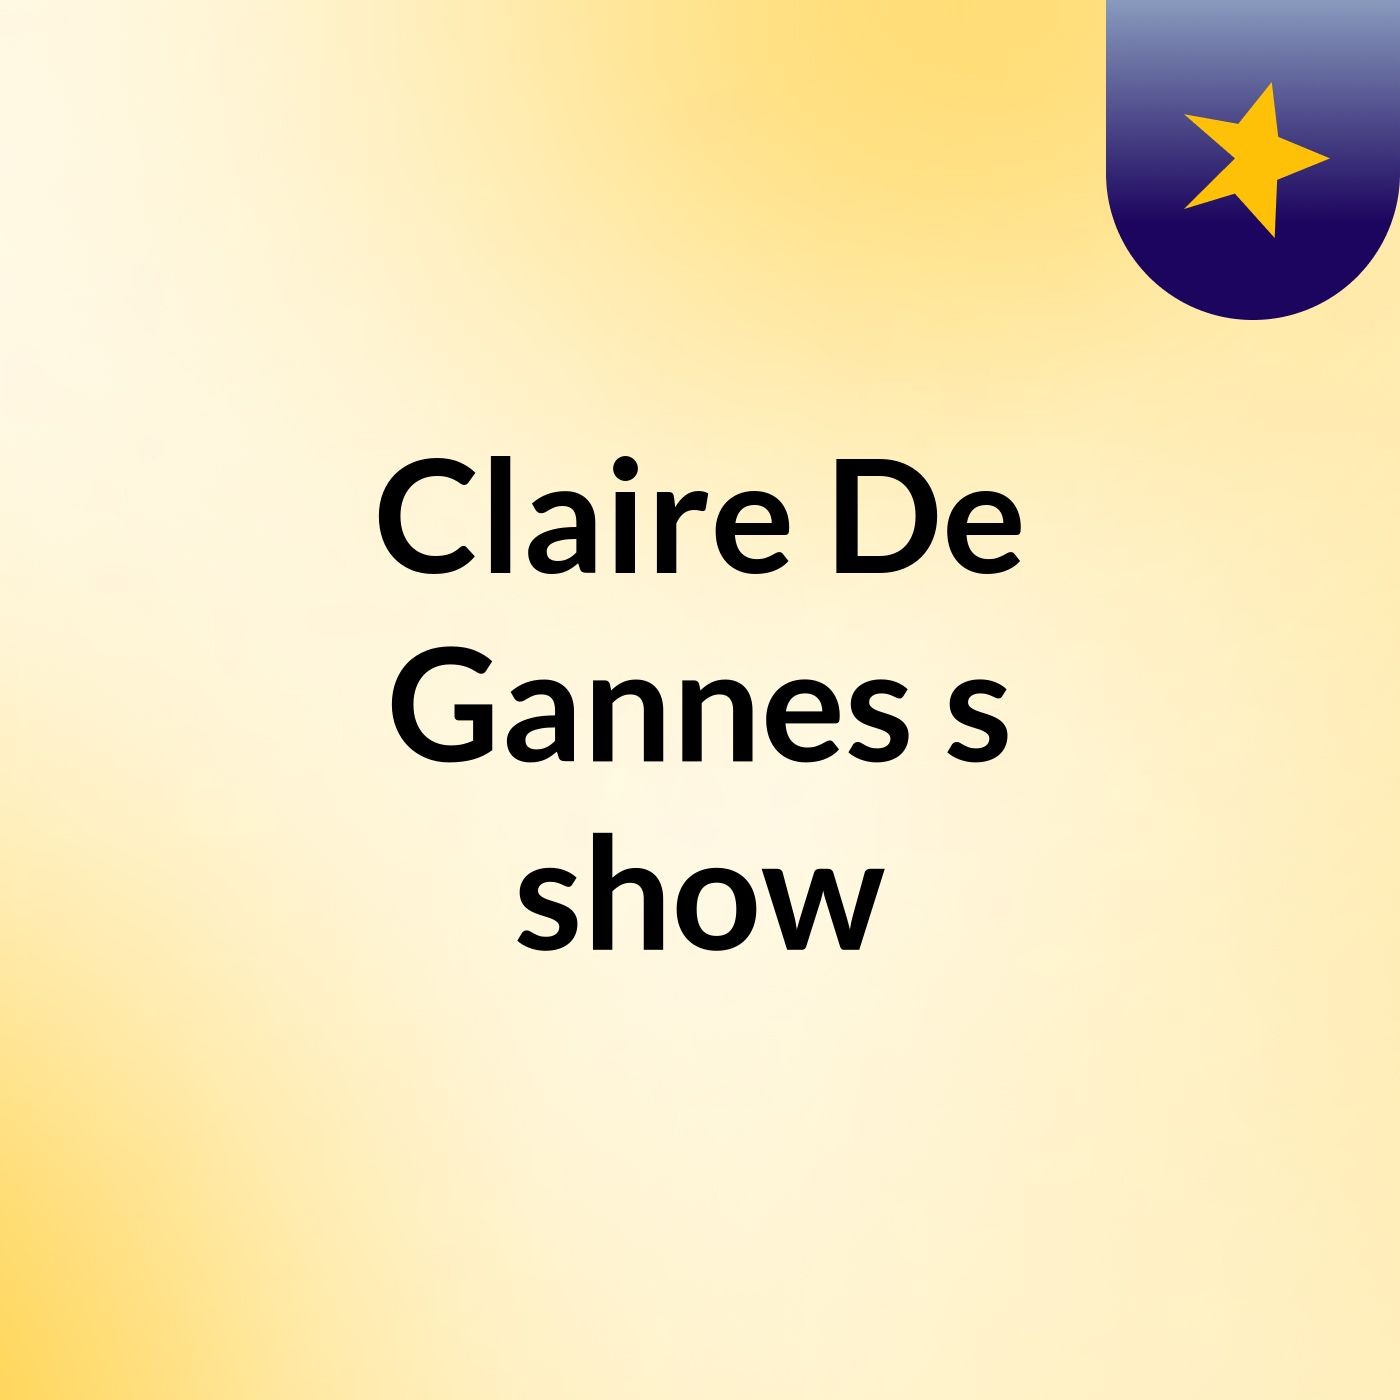 Claire De Gannes's show